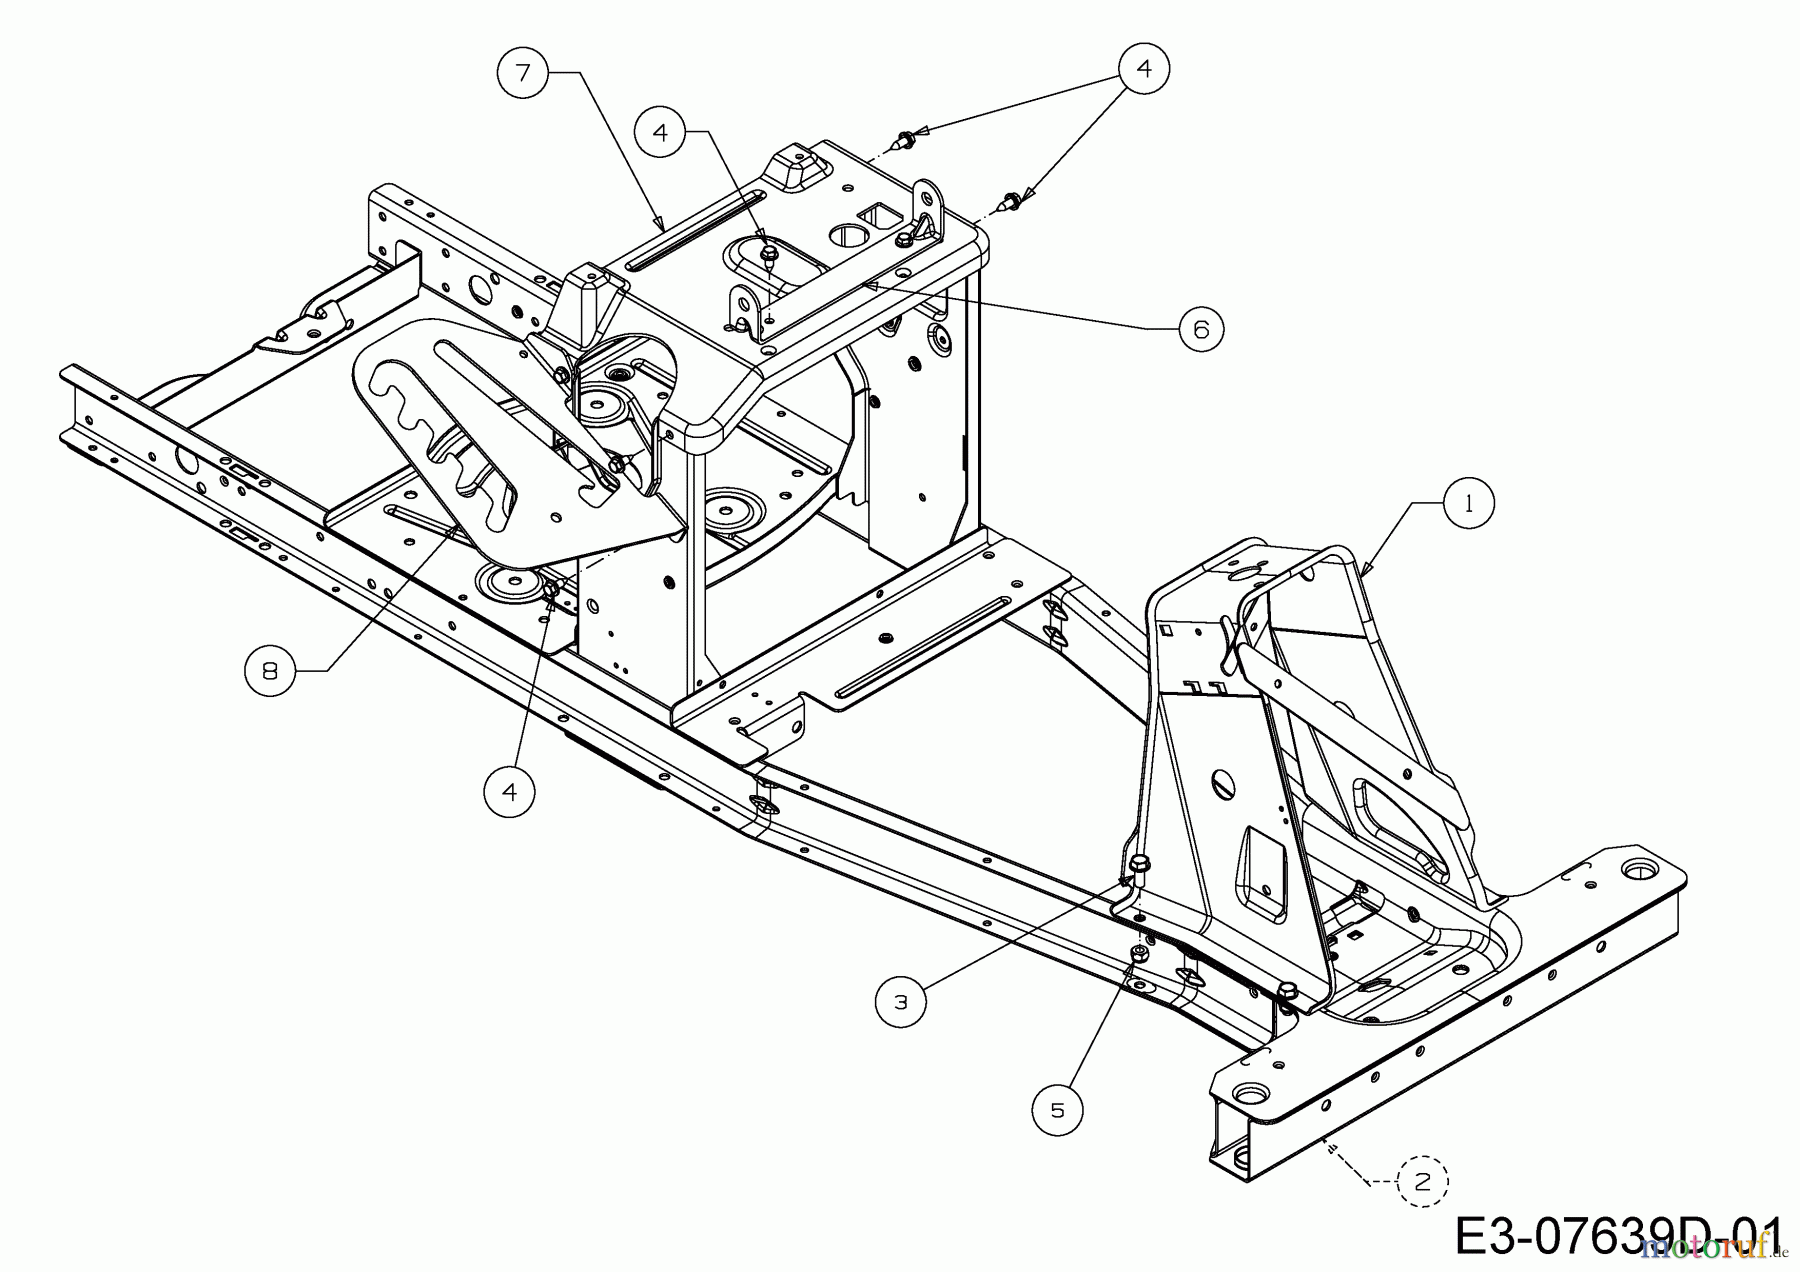  WOLF-Garten Expert Rasentraktoren Expert Scooter Pro 13B226HD650  (2015) Rahmen